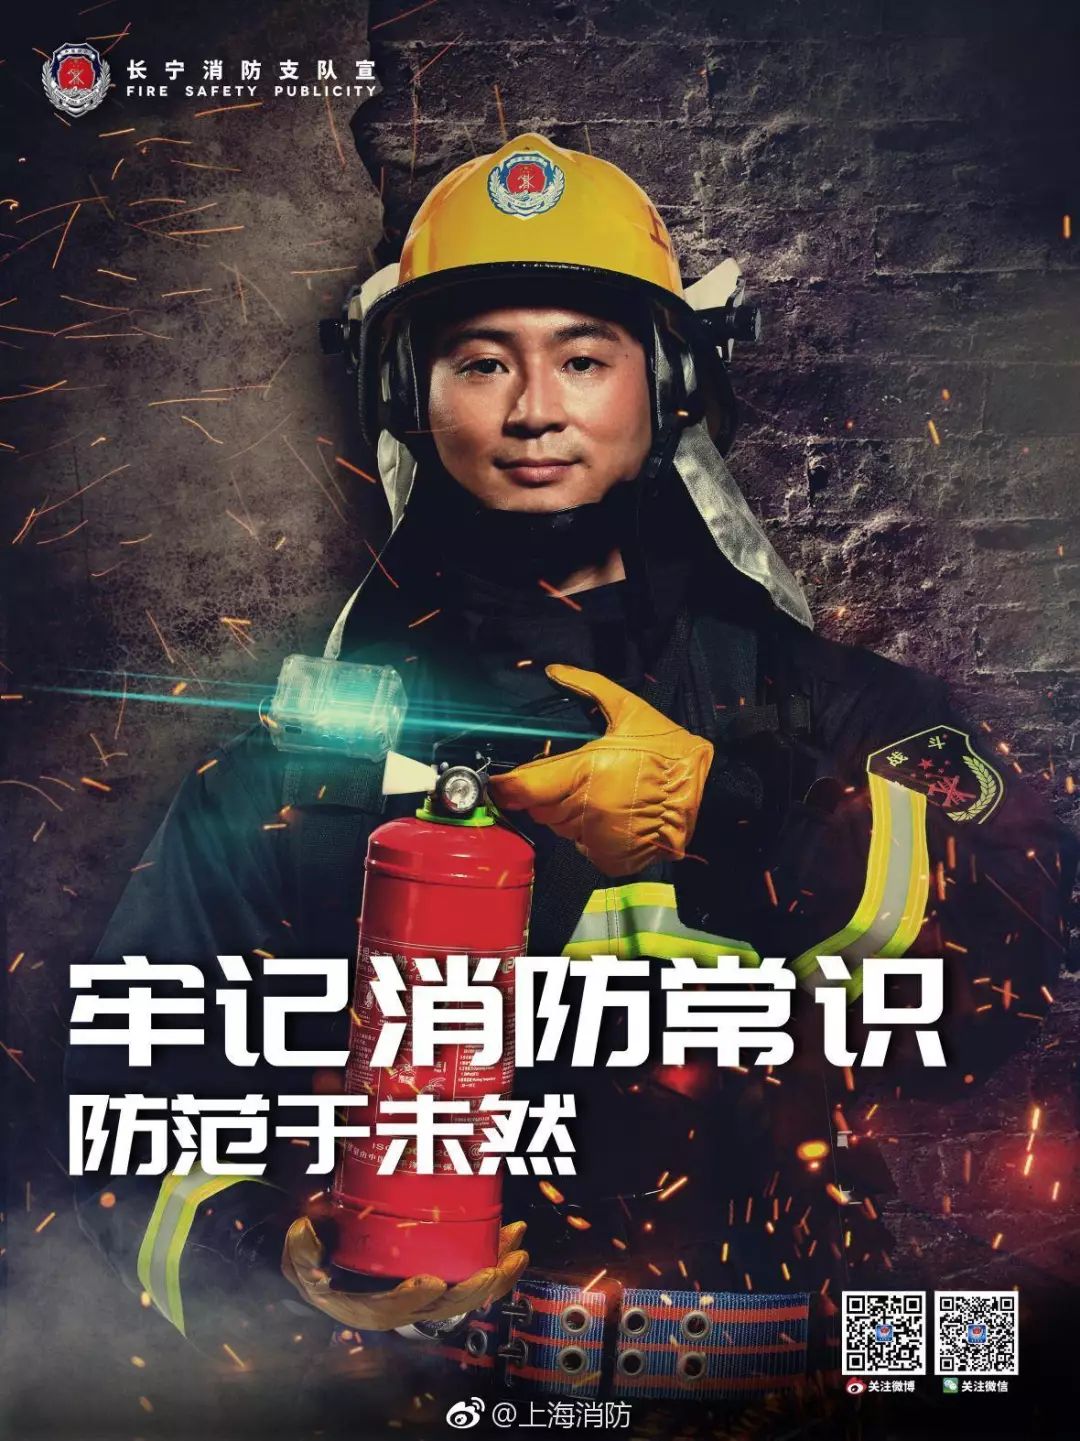 颜骏凌,蔡慧康,张一,张卫四名球员 担任长宁区消防宣传形象大使 并